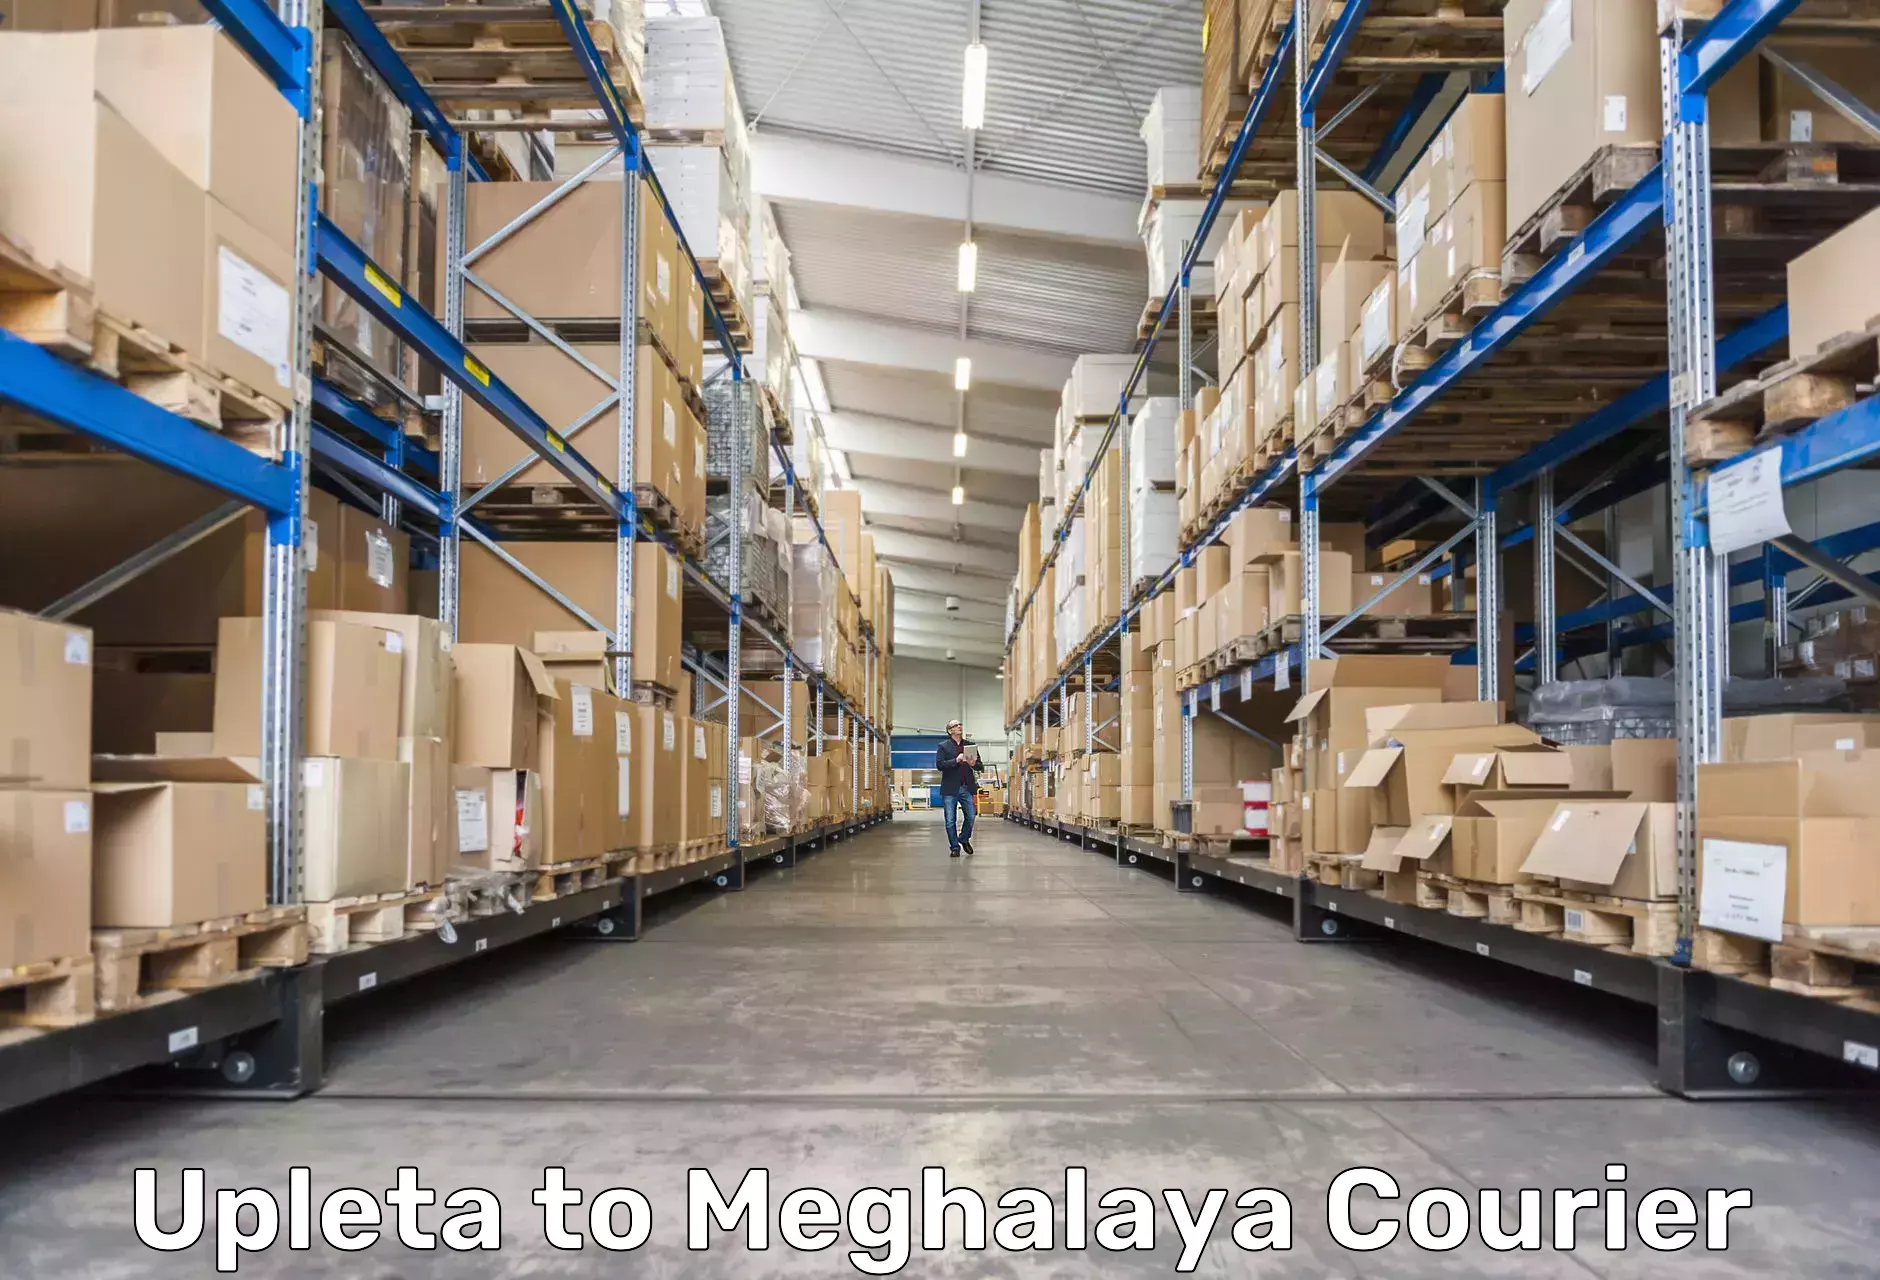 Logistics service provider Upleta to Phulbari